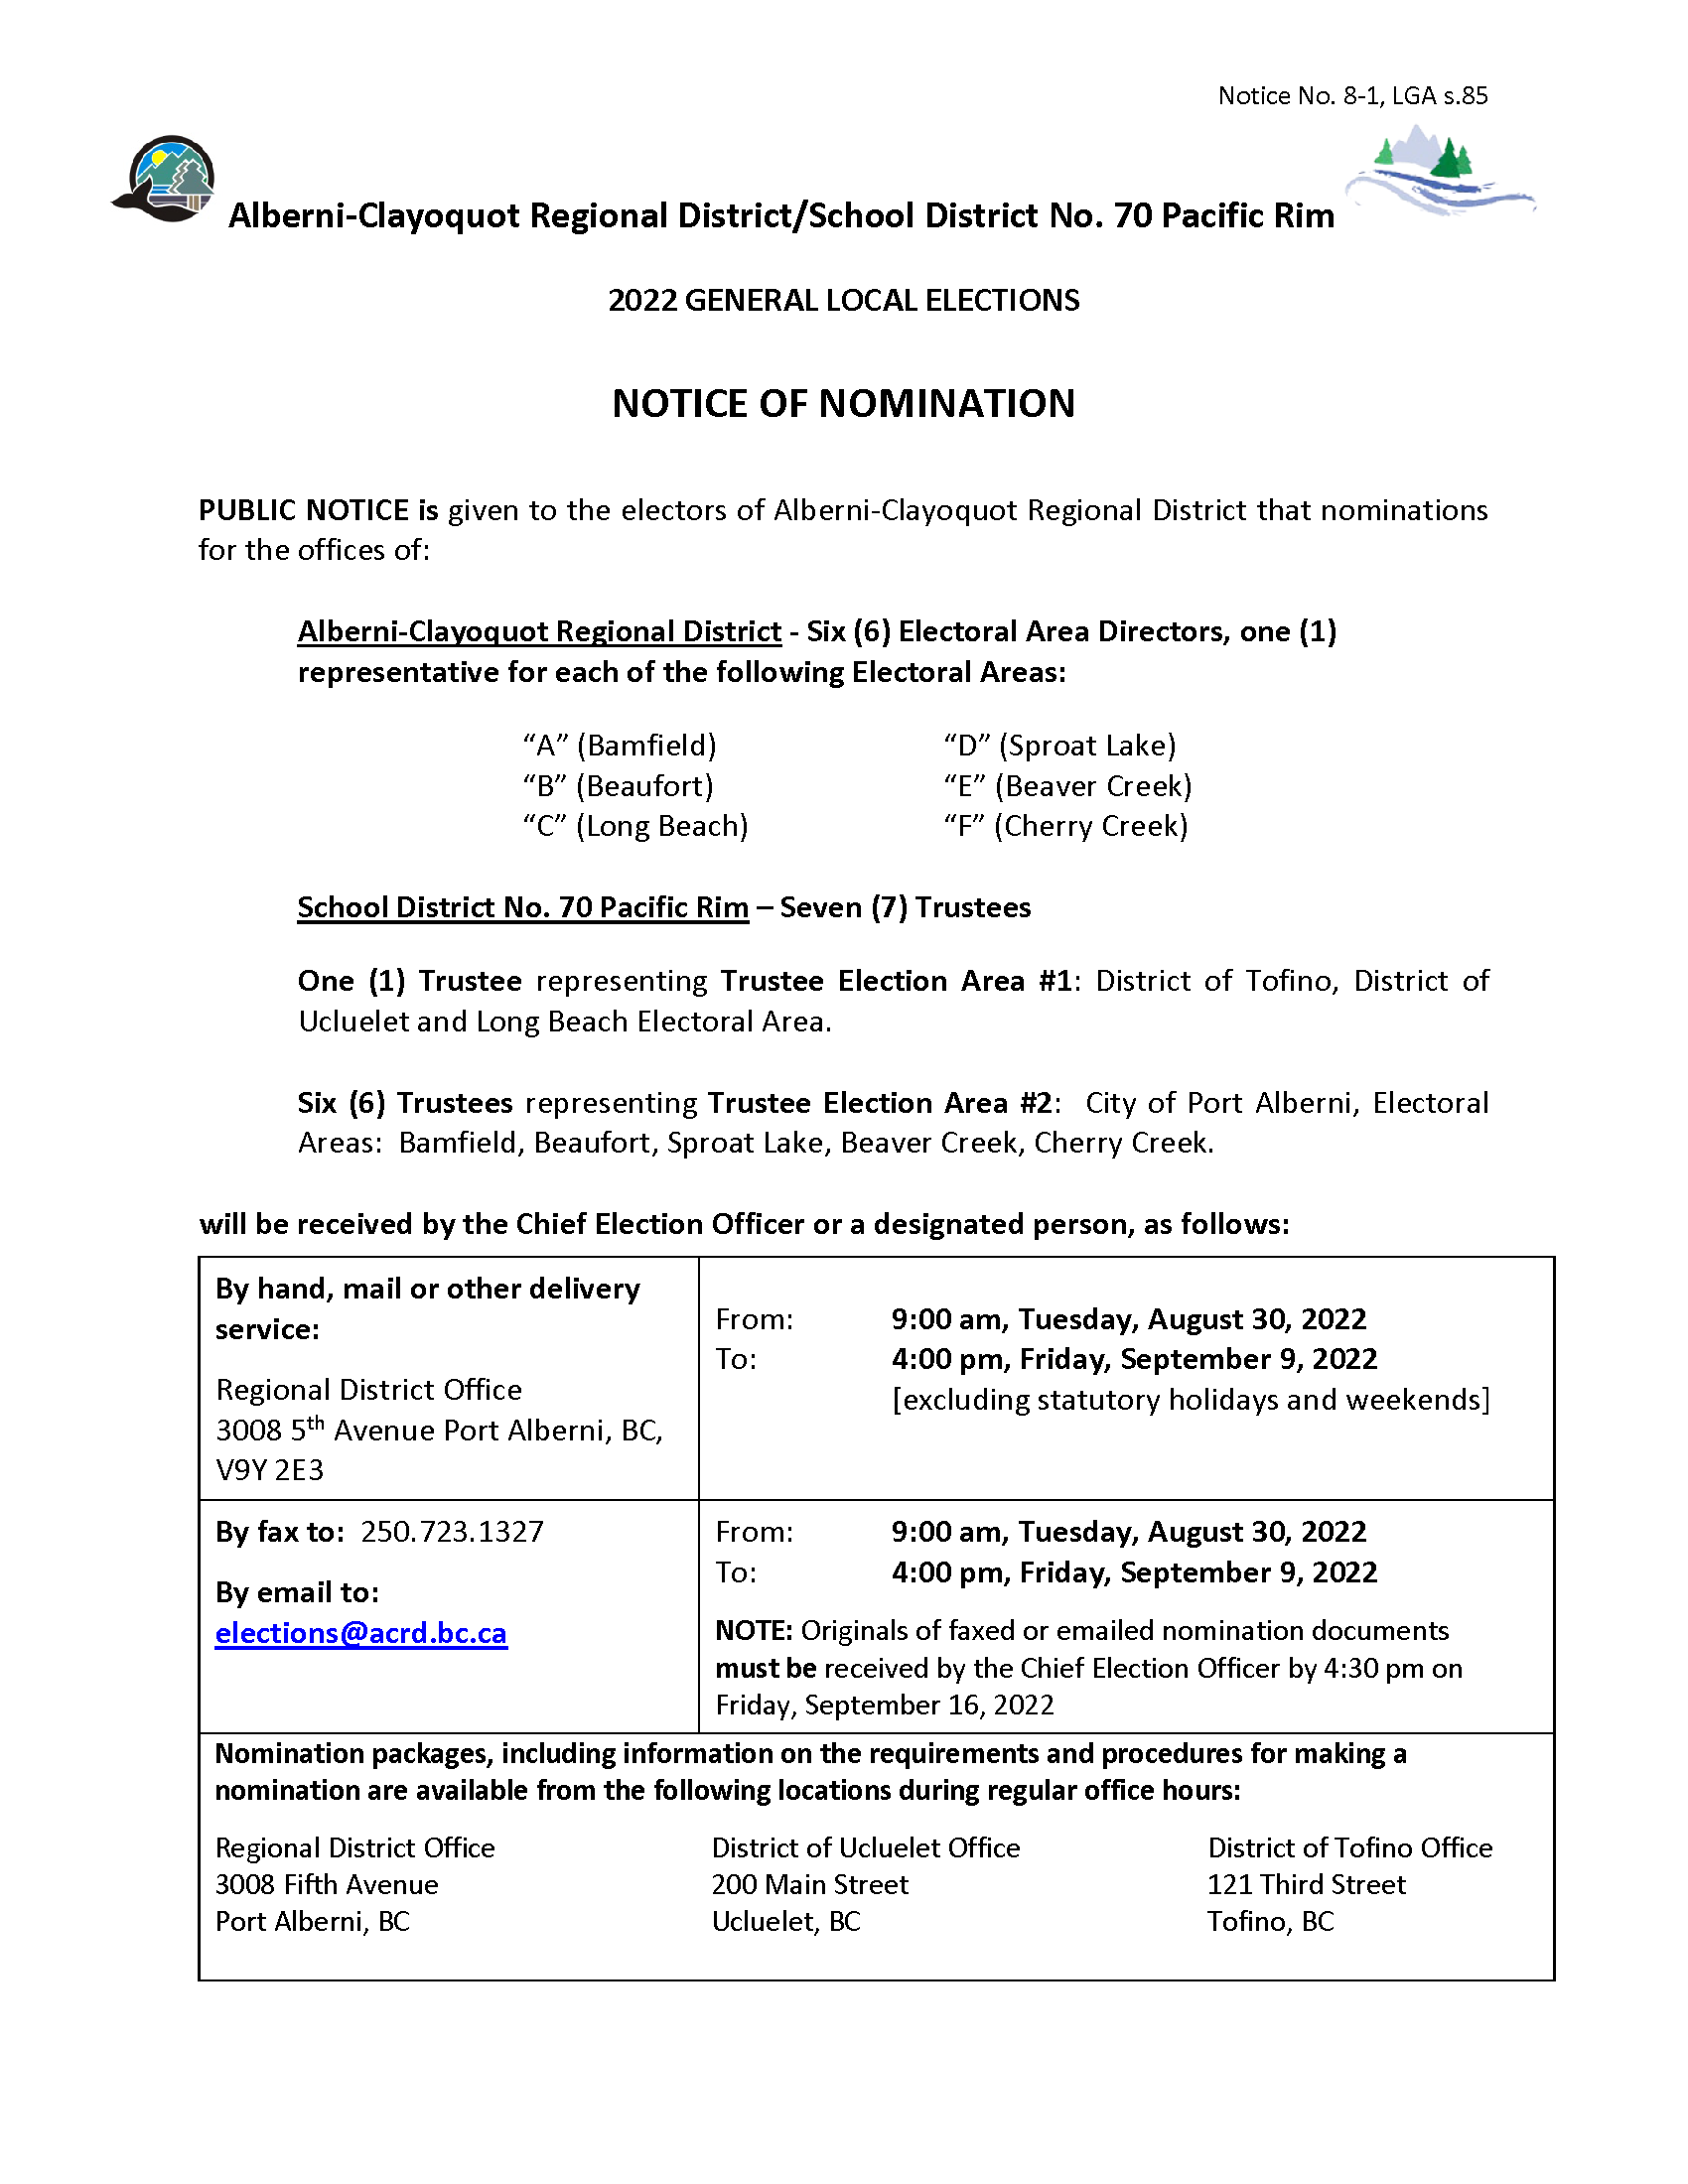 ACRD Notice No 8 1 Notice of Nomination 2022 Page 1